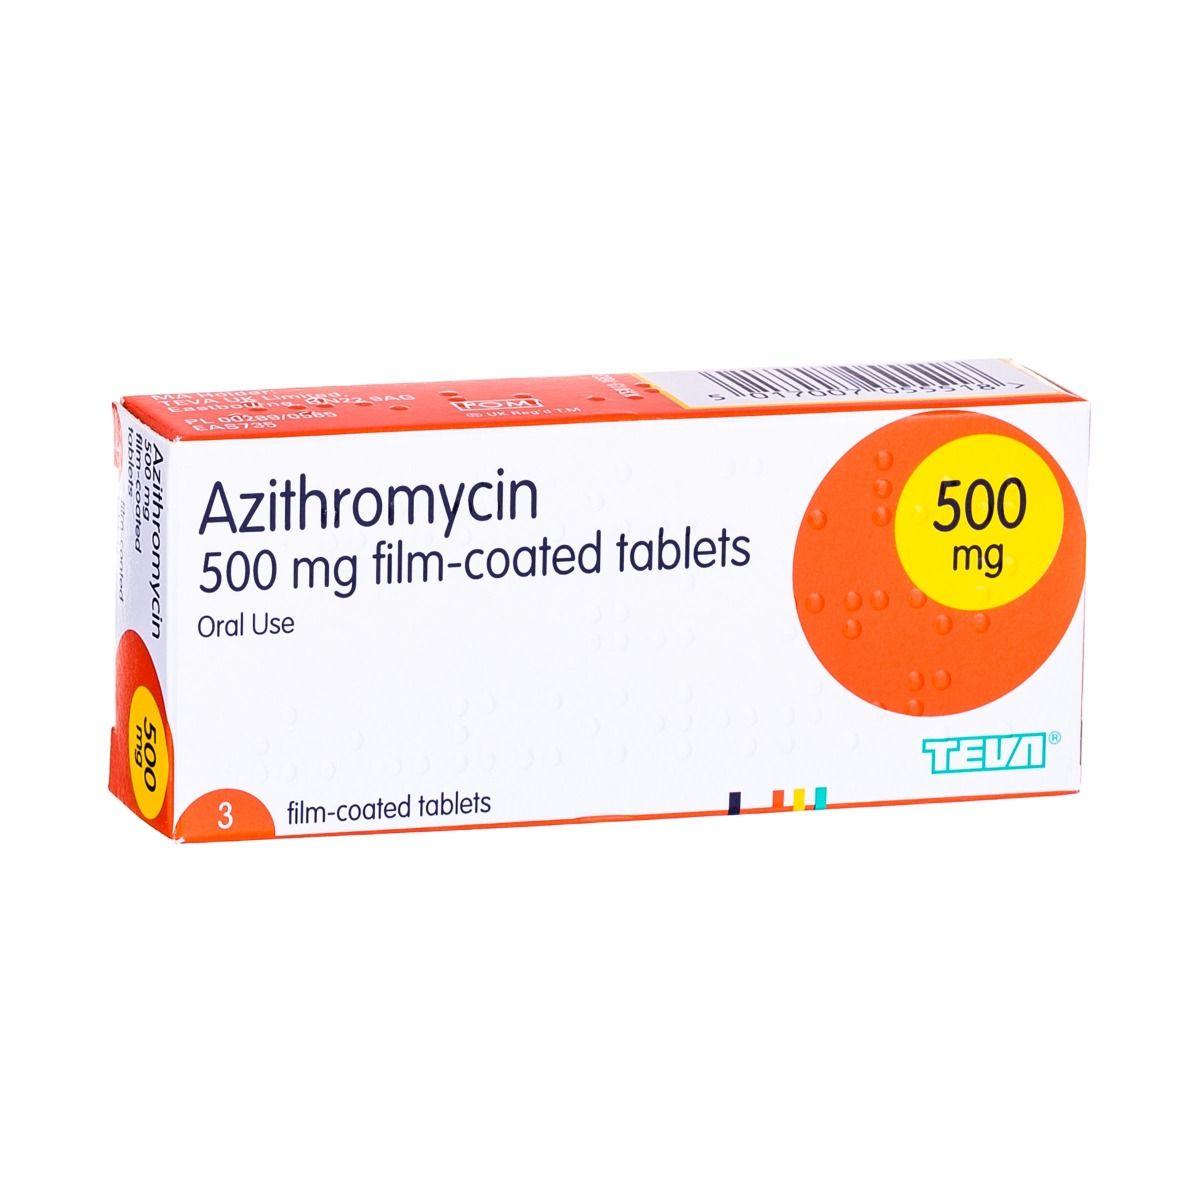 Comprar azithromycin/Teva (azithromycin) en línea - Precio y costes |  